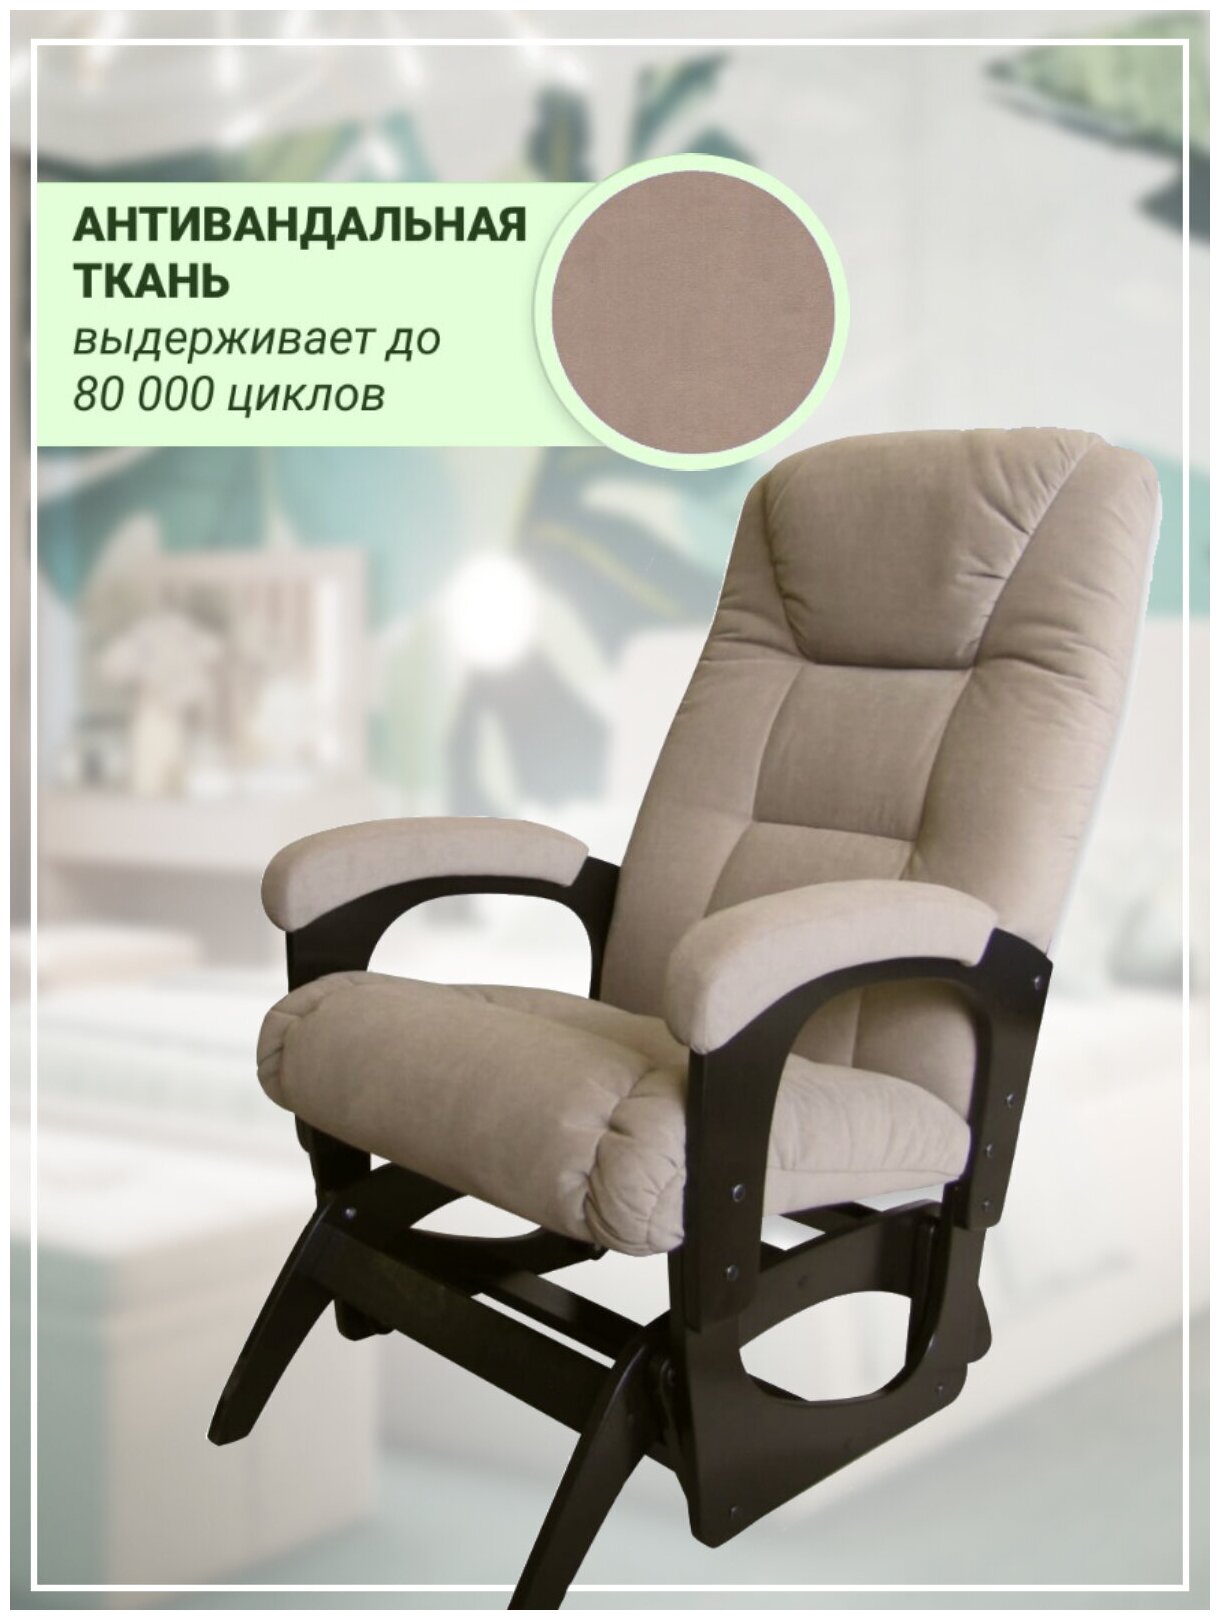 Кресло-качалка "марк" маятник мягкая мебель для взрослых отдыха качания кормления